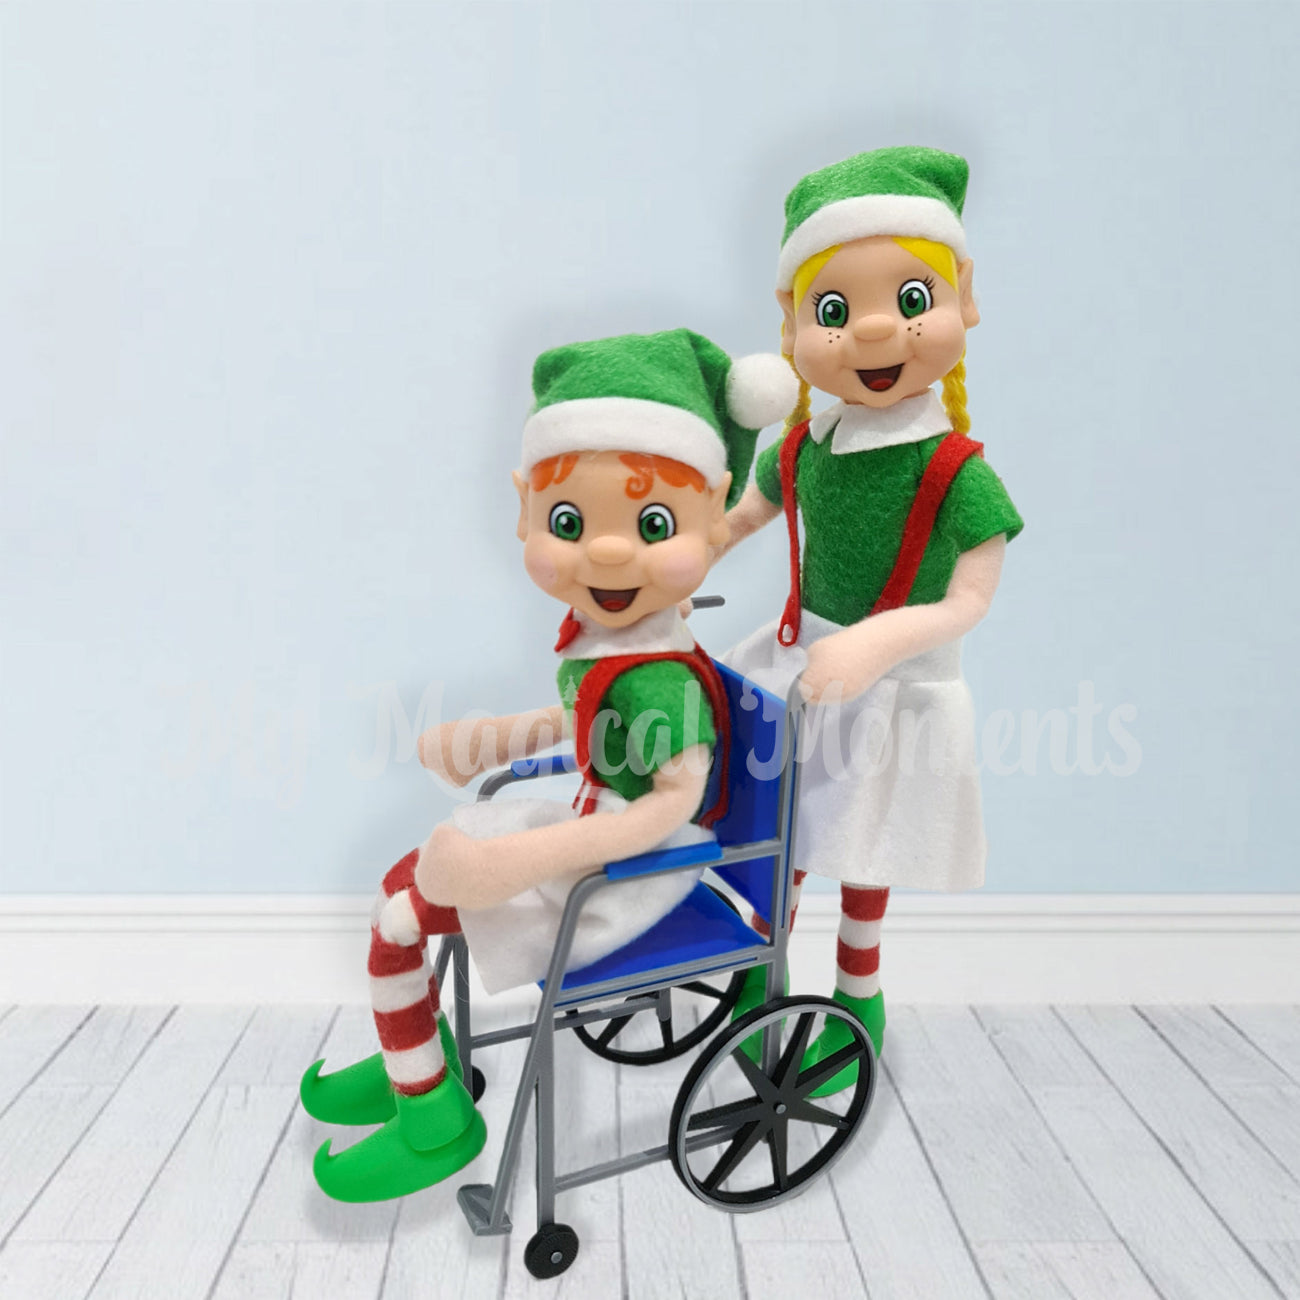 A blonde hair elf pushing a orange hair elf in a blue wheel chair